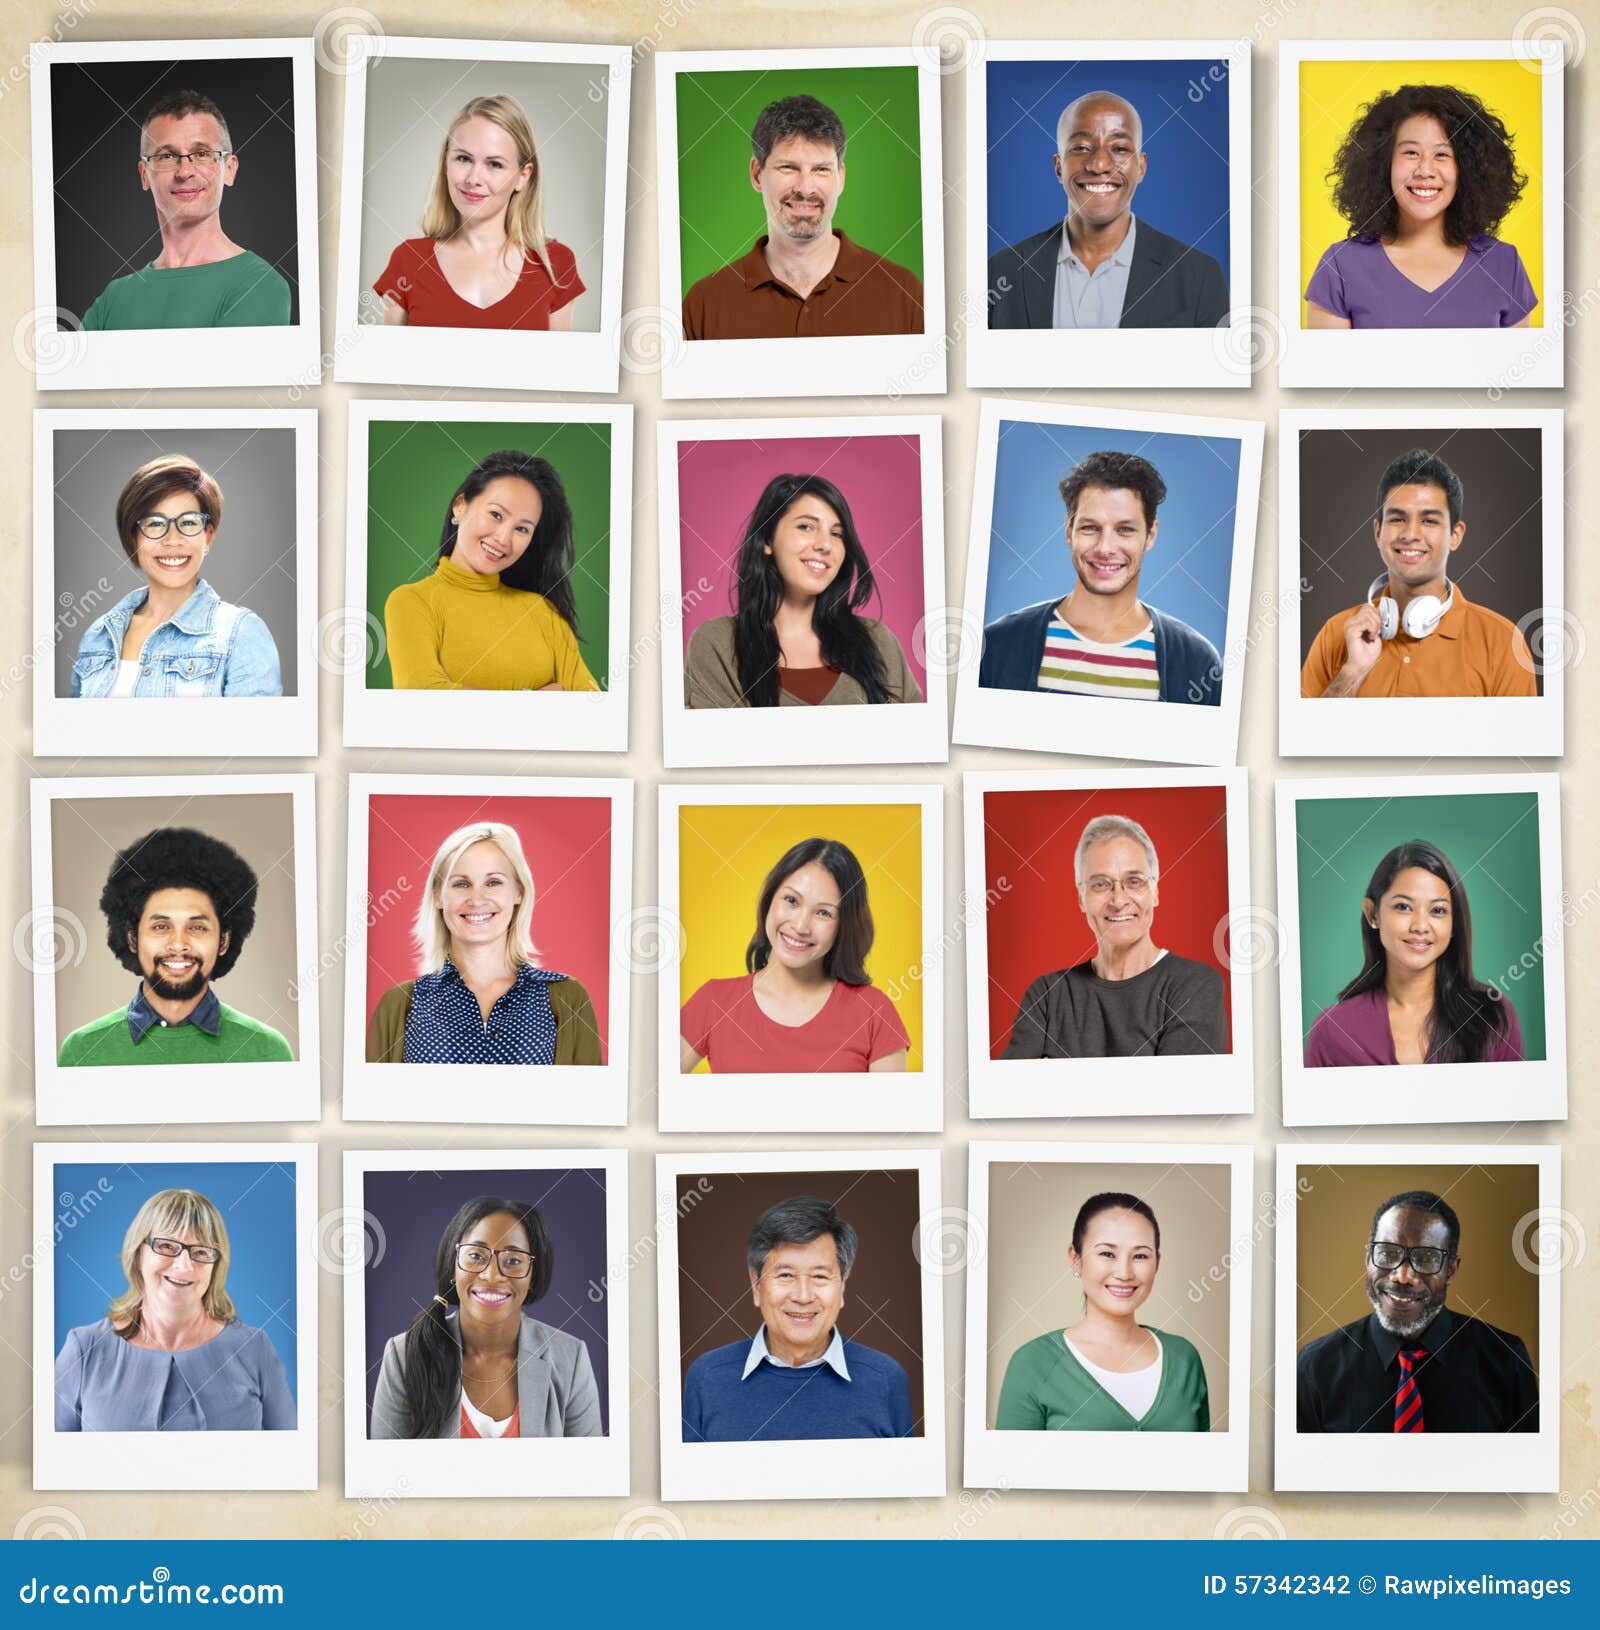 people diversity faces human face portrait community concept